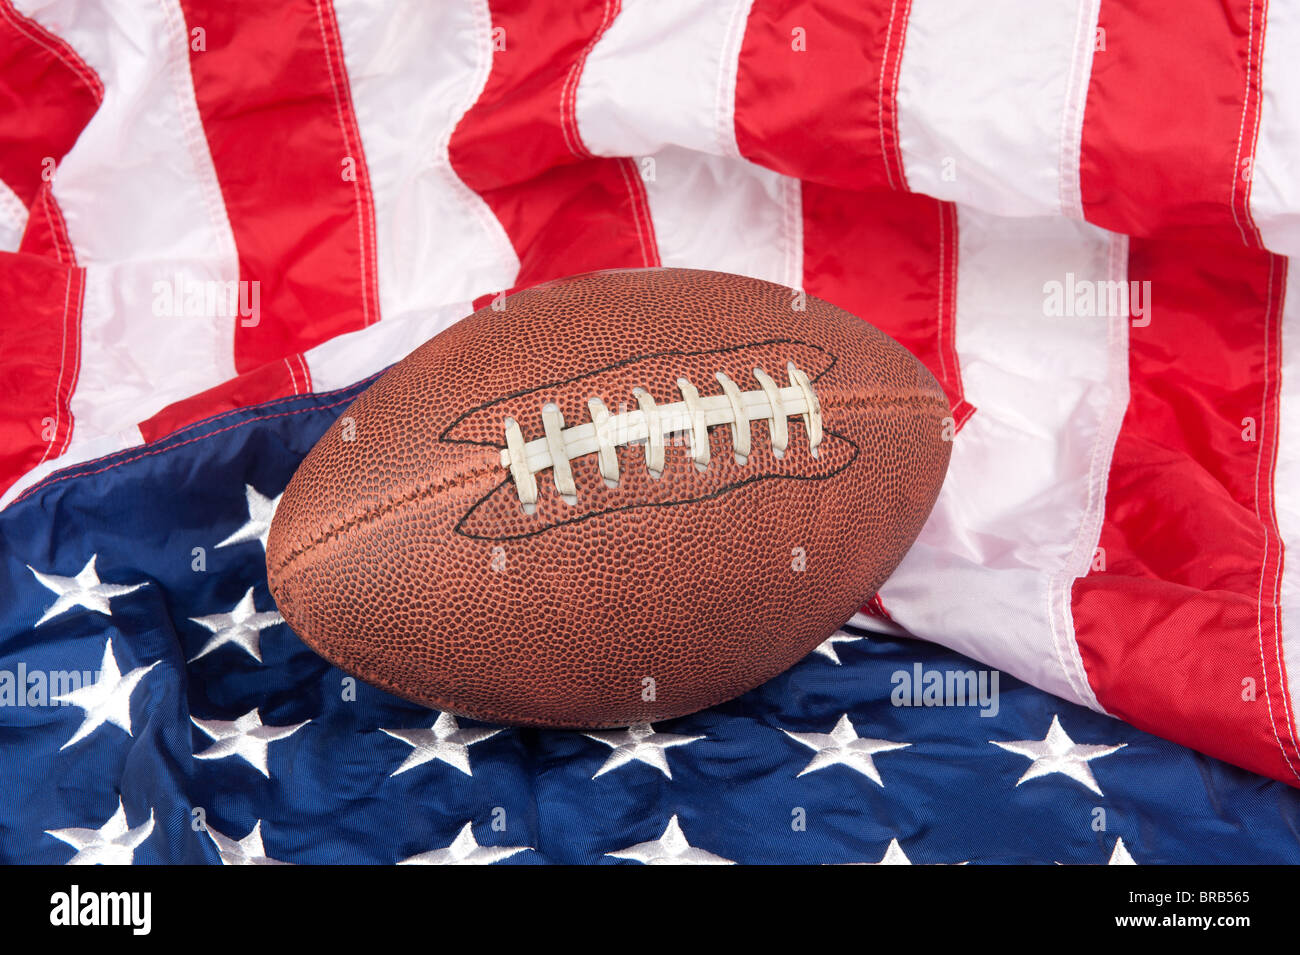 Fußball auf eine amerikanische Flagge zeigt einen patriotischen Geist. Stockfoto